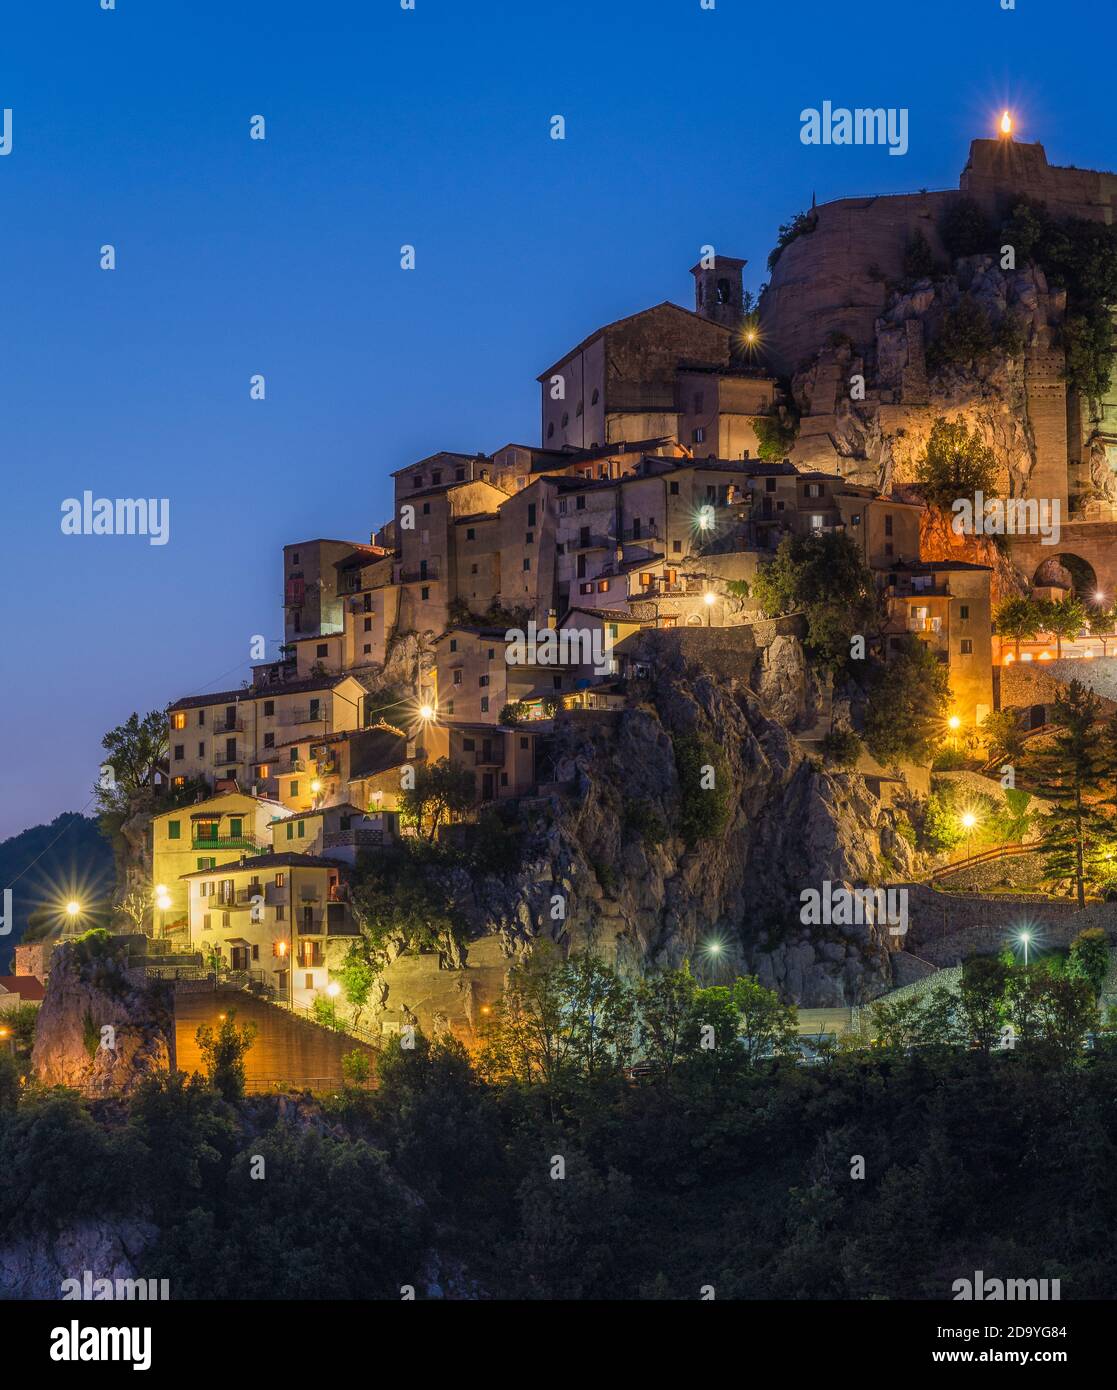 Cervara di Roma illuminata di notte, bellissimo borgo in provincia di Roma, Lazio, Italia. Foto Stock